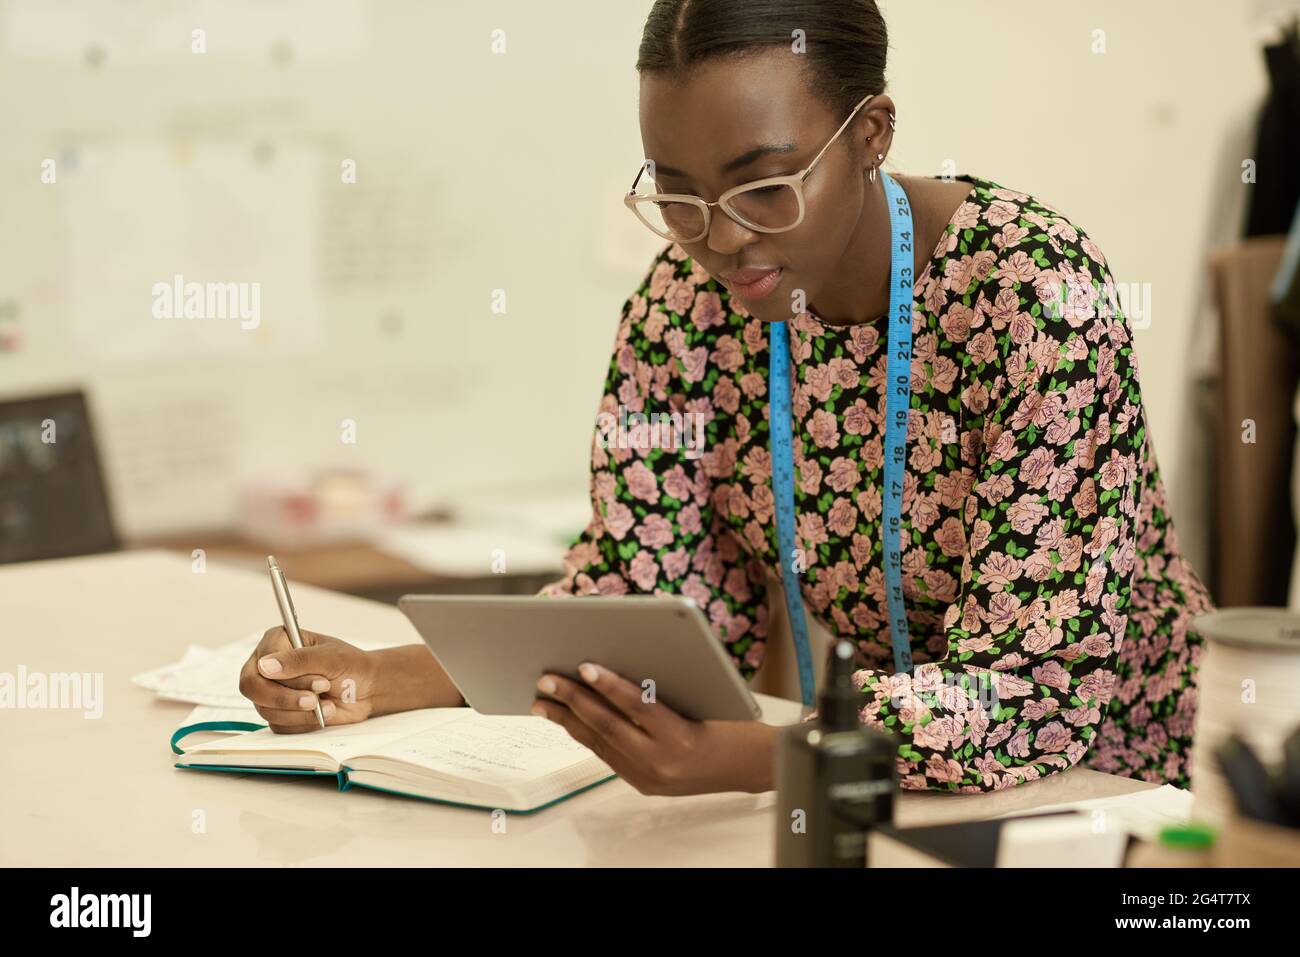 Afrikanische Designerin für Kleidung, die in ihrem Studio ein Tablet benutzt Stockfoto